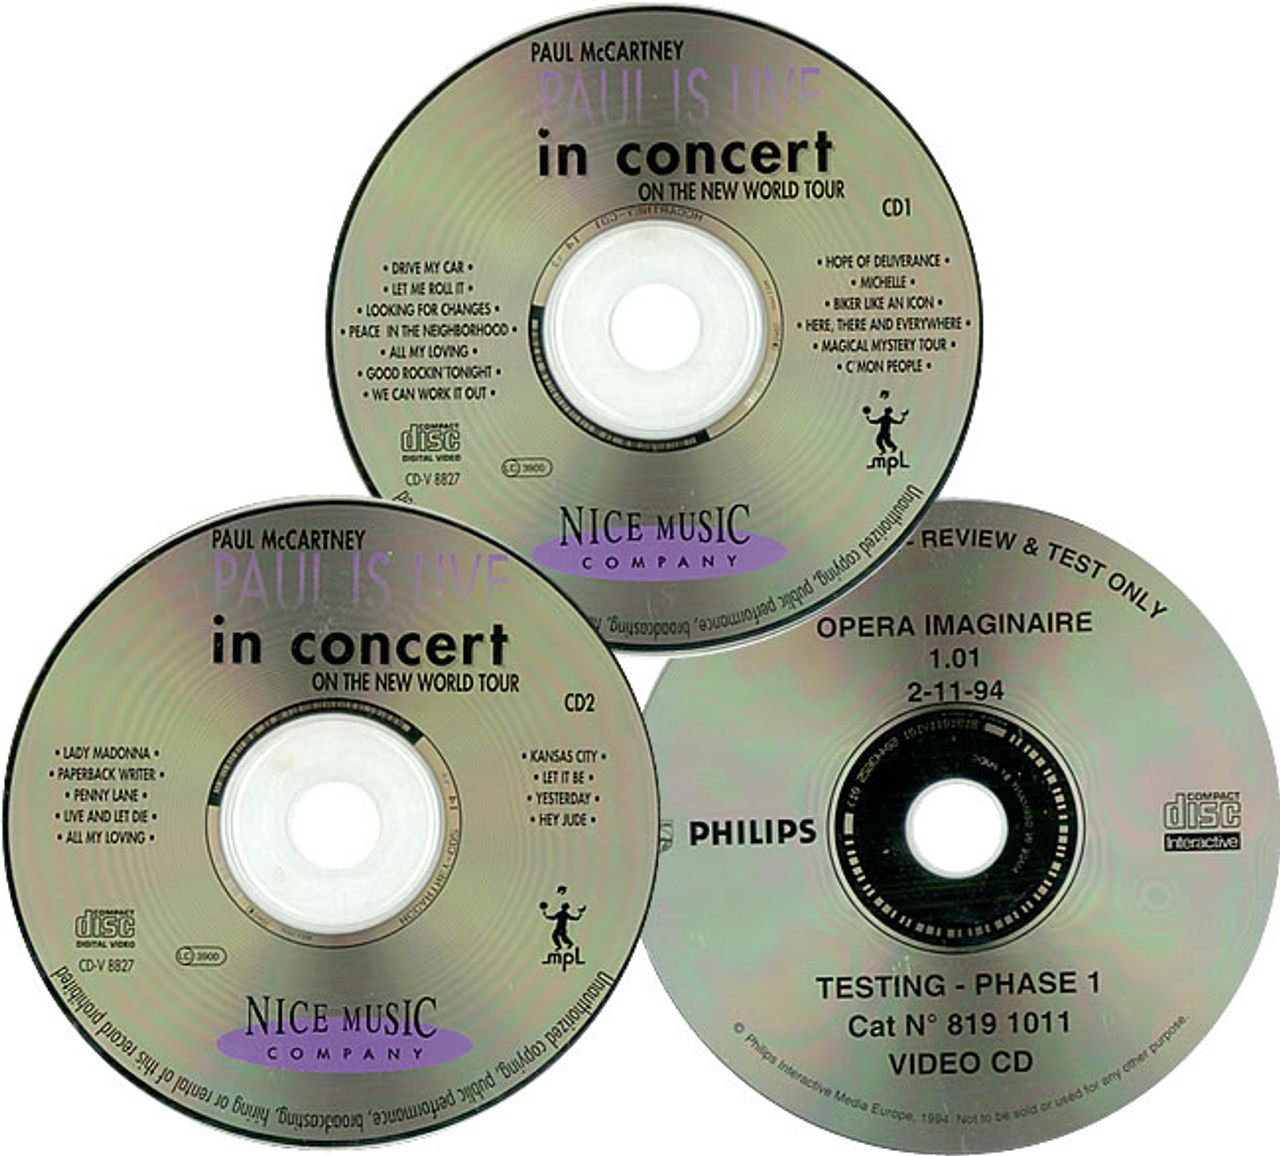 Madonna Music US Promo CD-ROM — RareVinyl.com